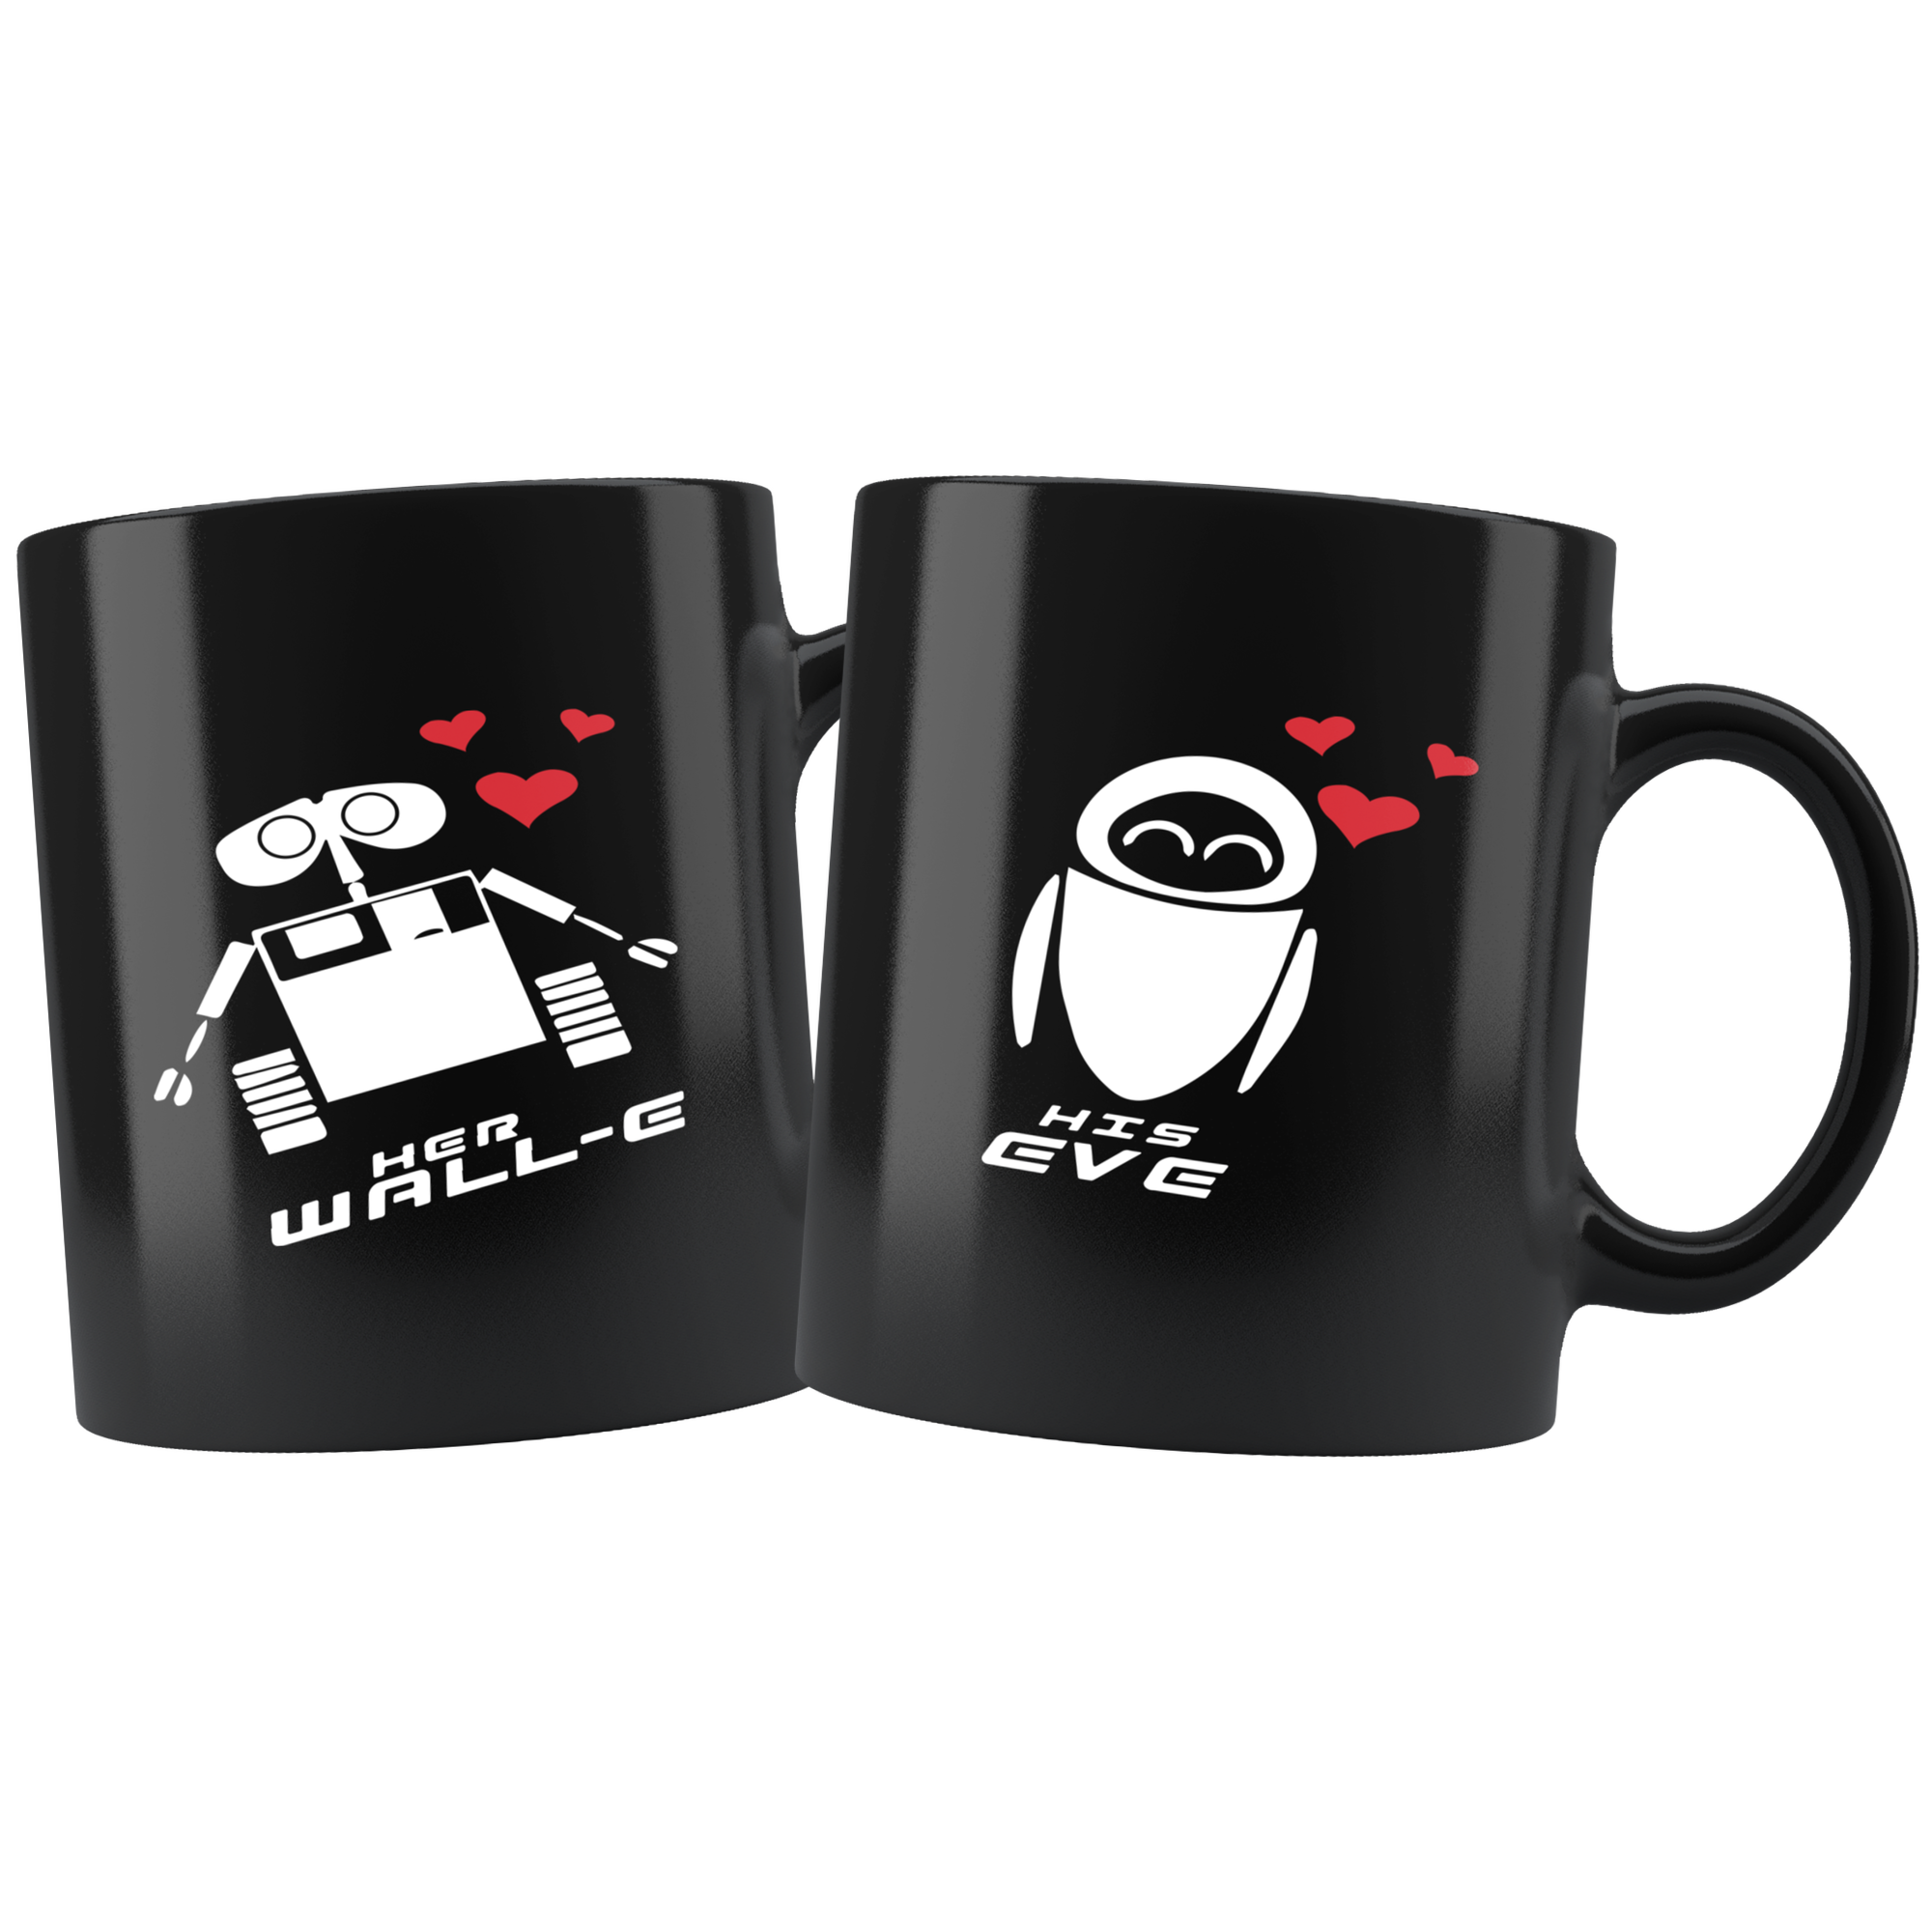 Wall-E Couple Combo Mugs